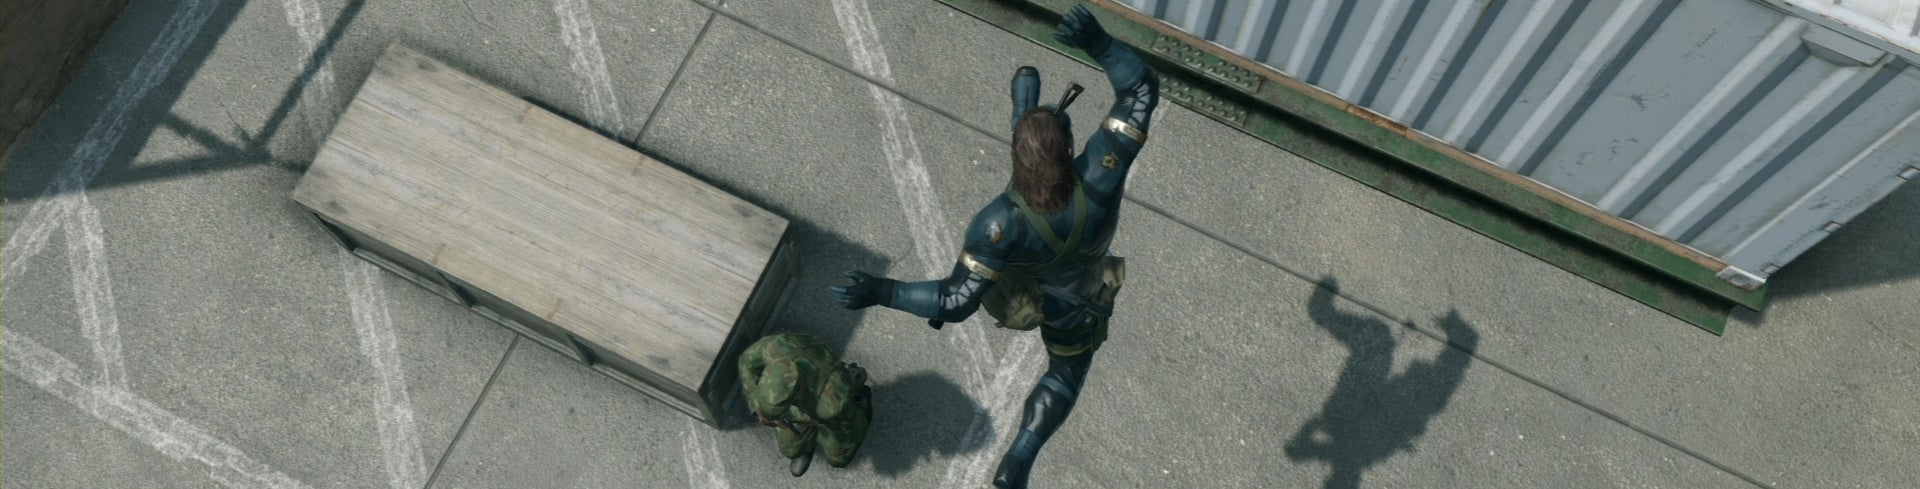 Obrazki dla Metal Gear Solid: Ground Zeroes - najdroższe i najlepsze demo w historii